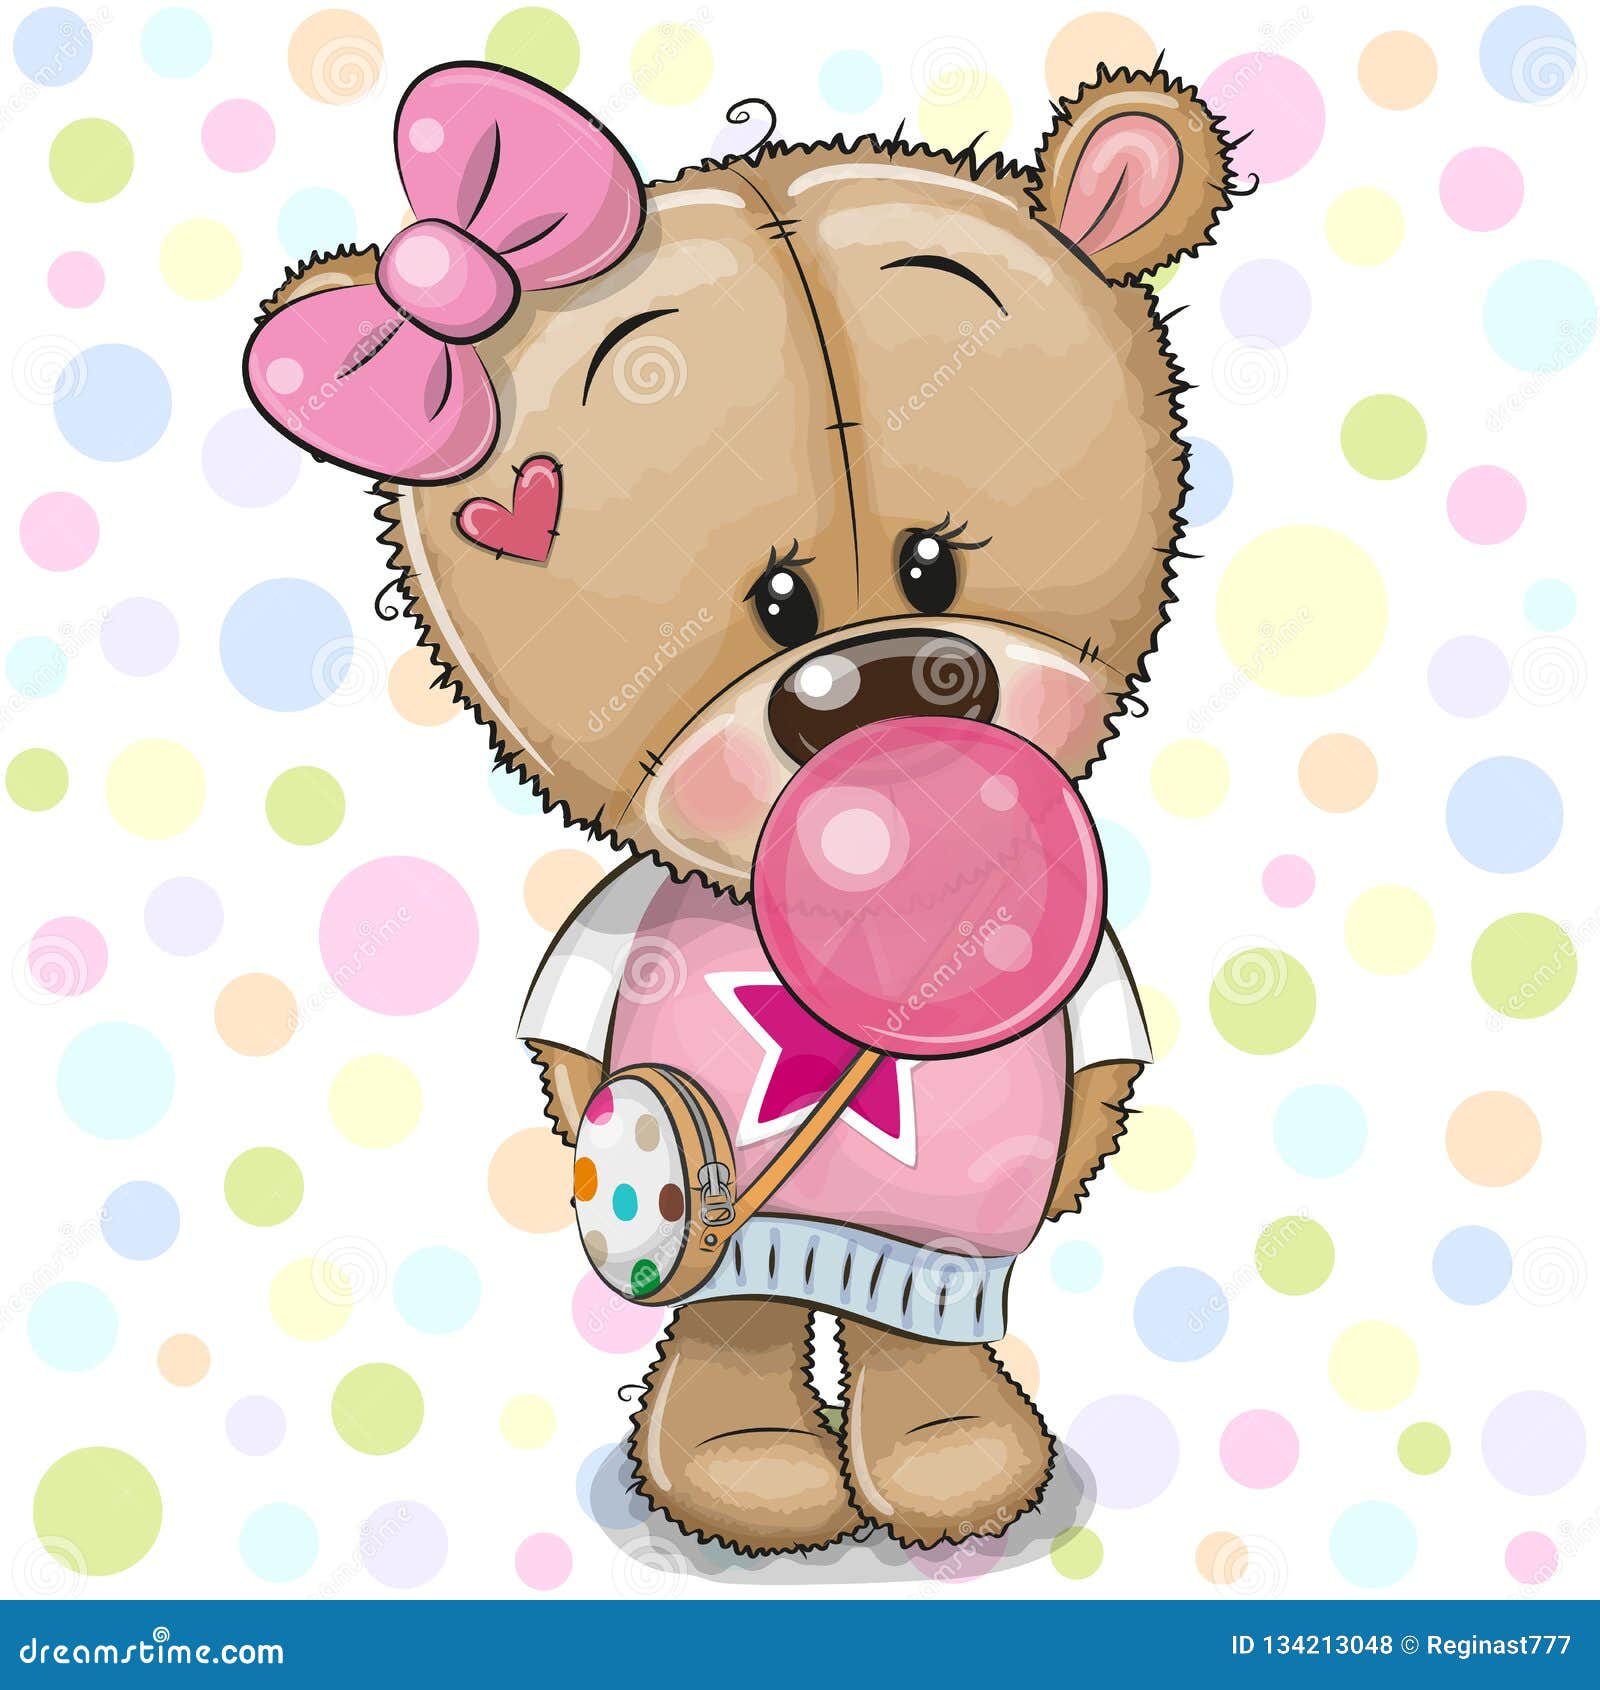 Тедди девочка. Медвежонок Тедди девочка. Медвежонок с розовым бантиком. Девочка с мишкой. Девочка с медвежонком.